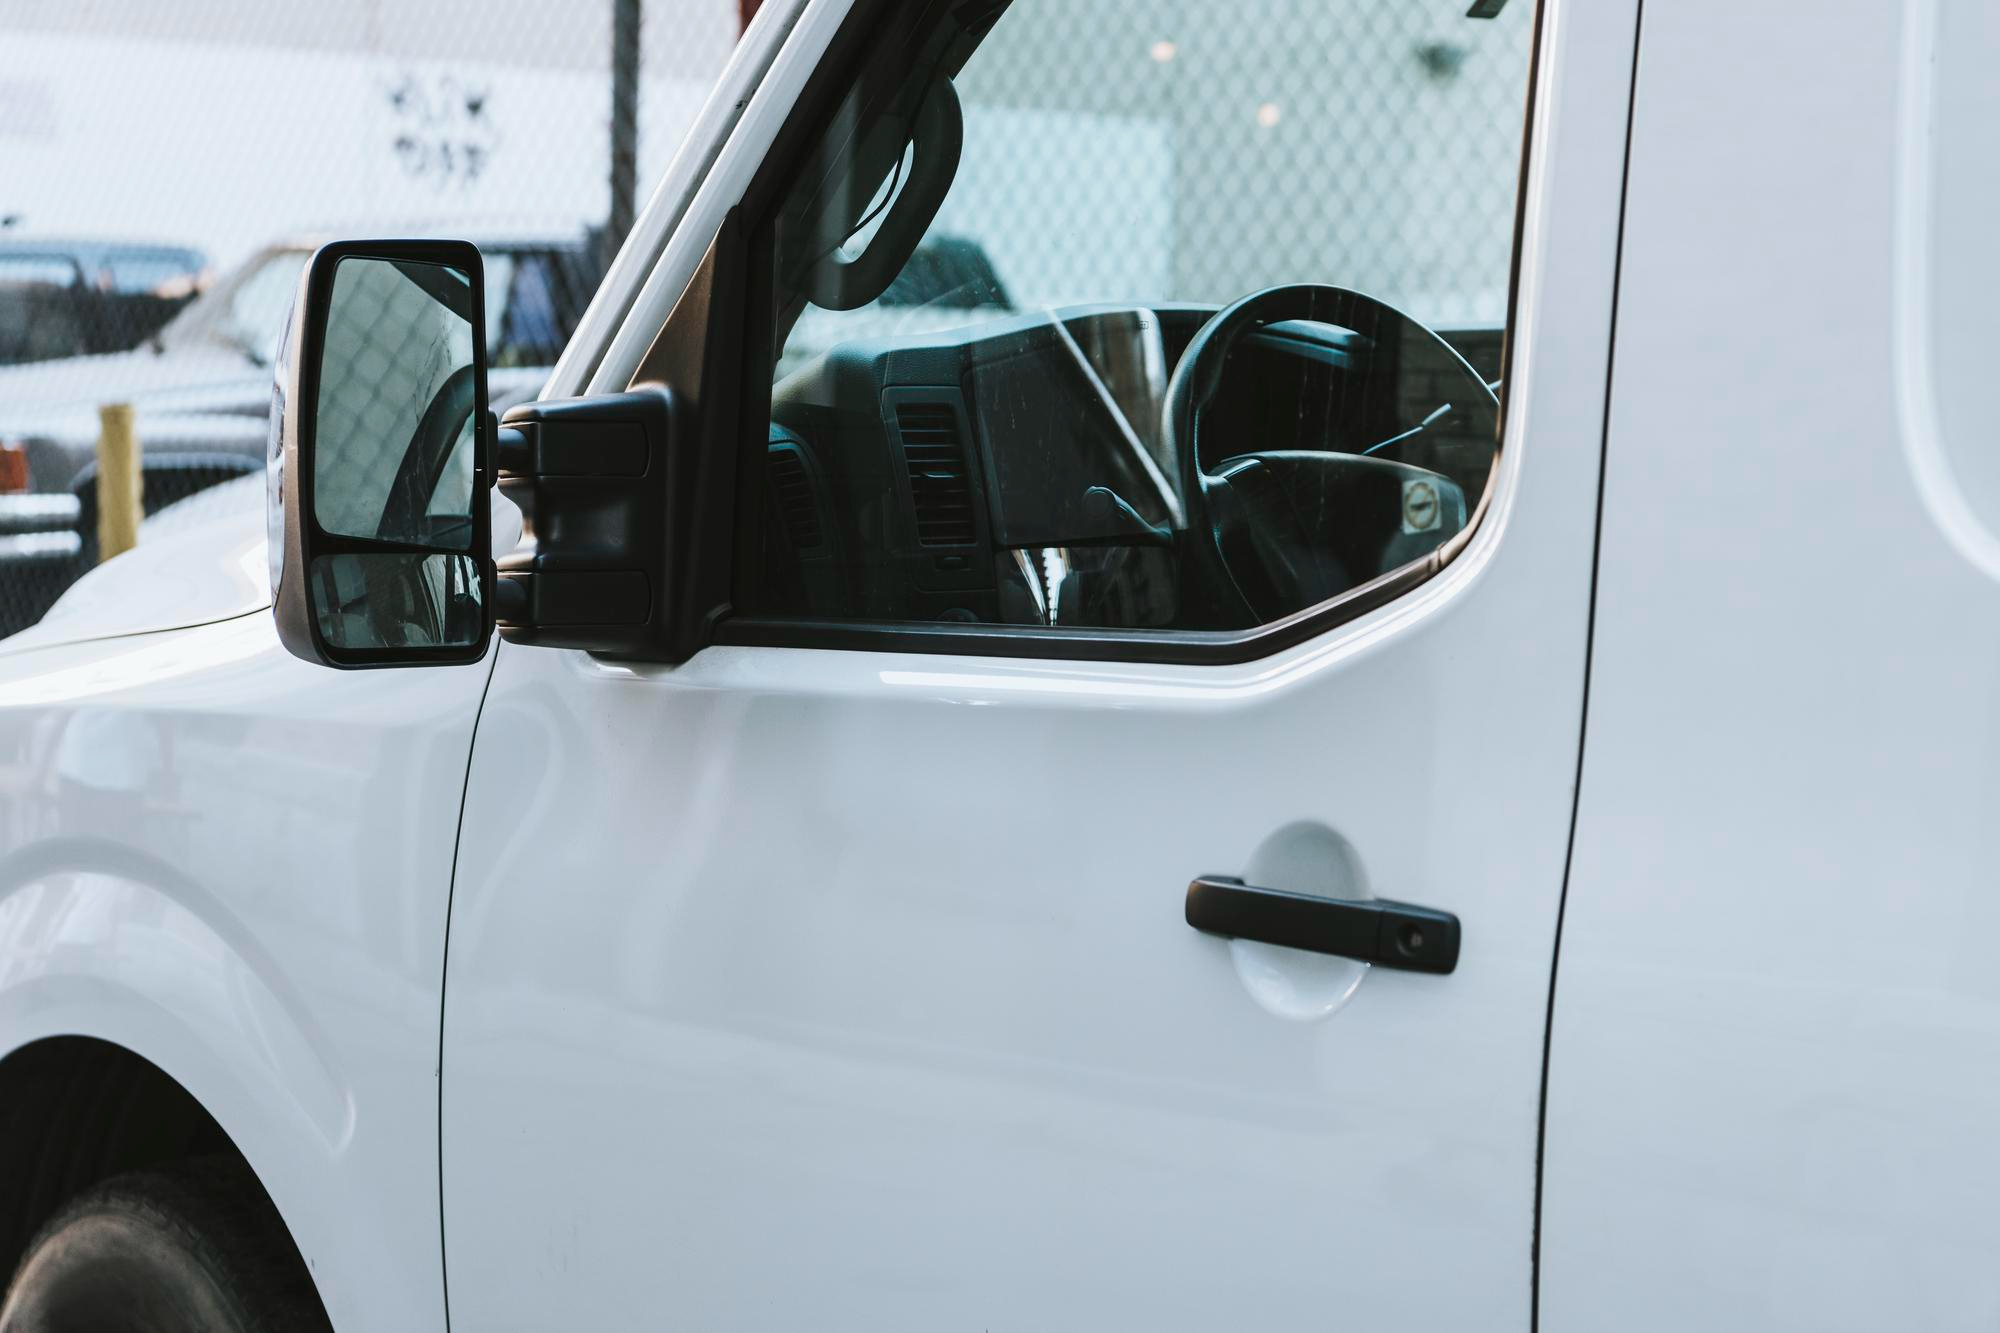 drivers-door-of-white-truck